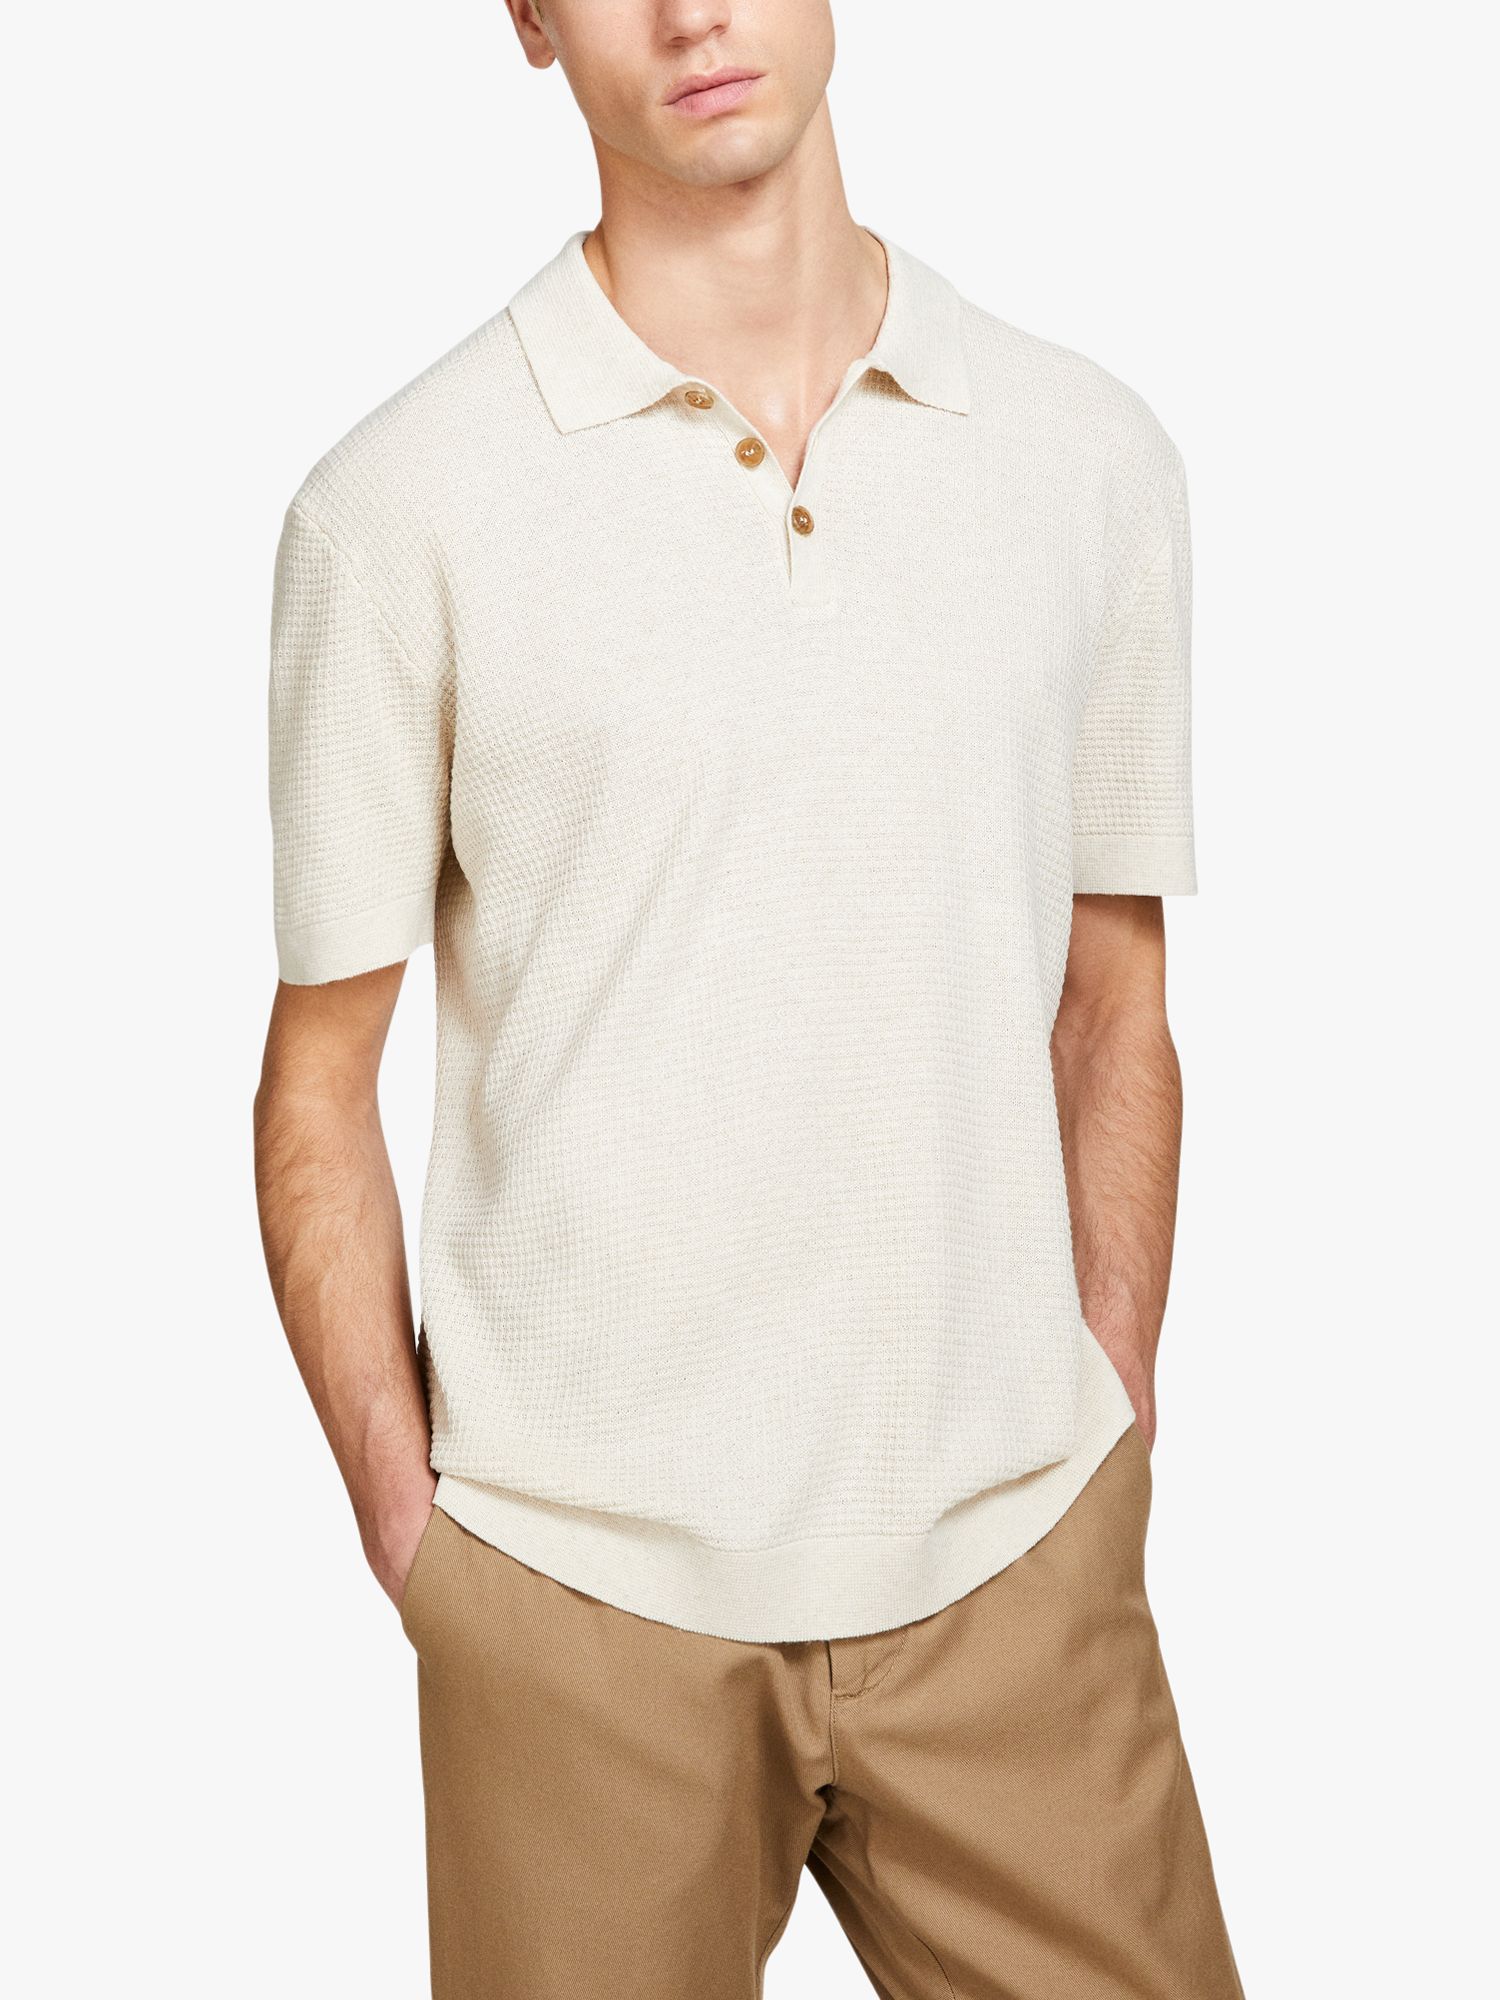 SISLEY Knitted Linen Blend Polo Shirt, White, S